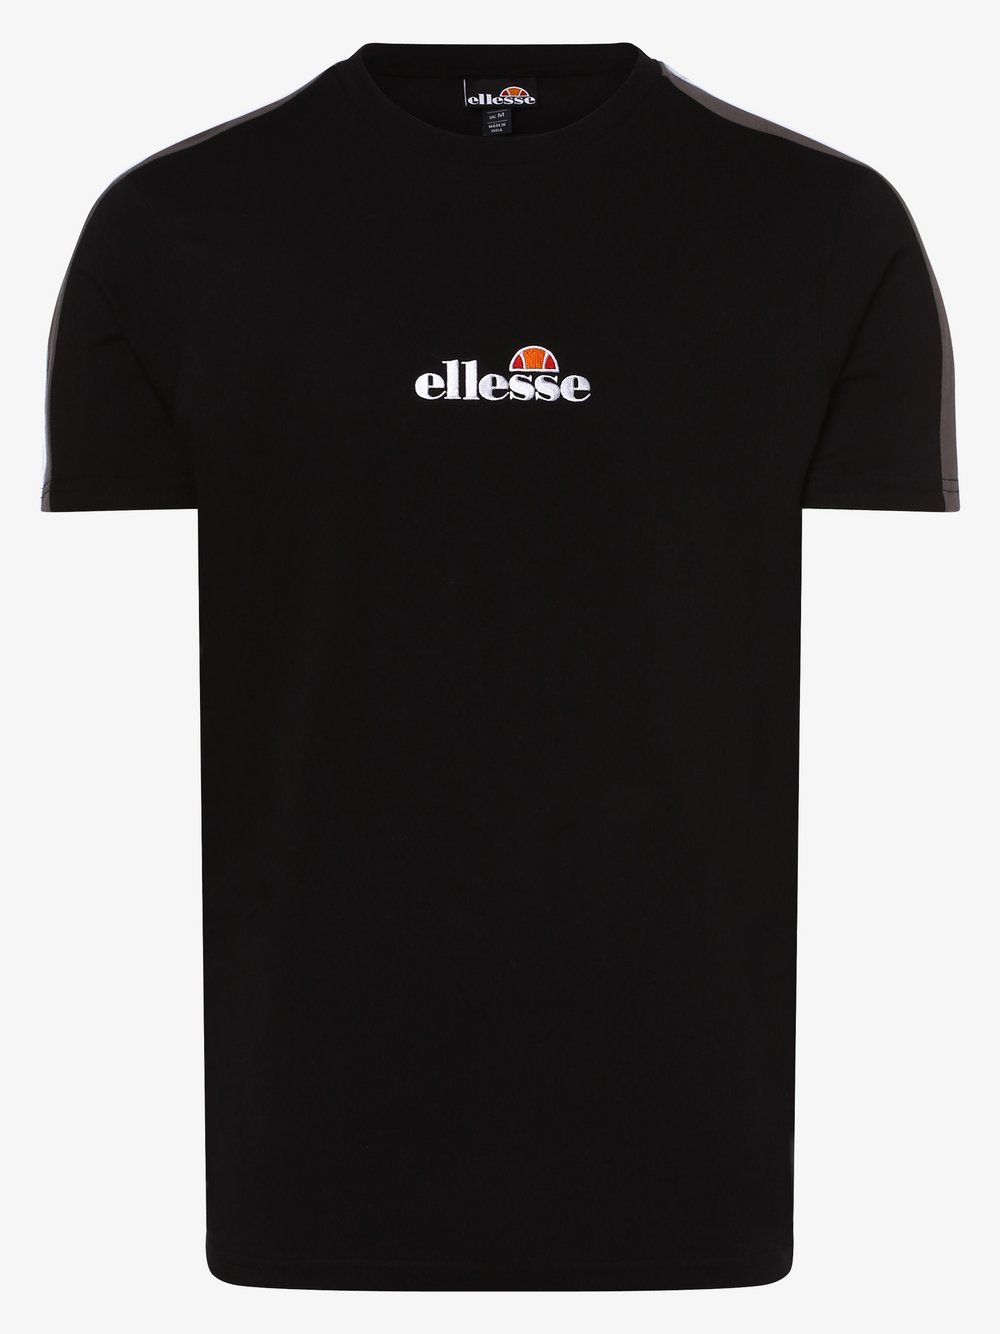 ellesse - T-shirt męski – Carcano, czarny